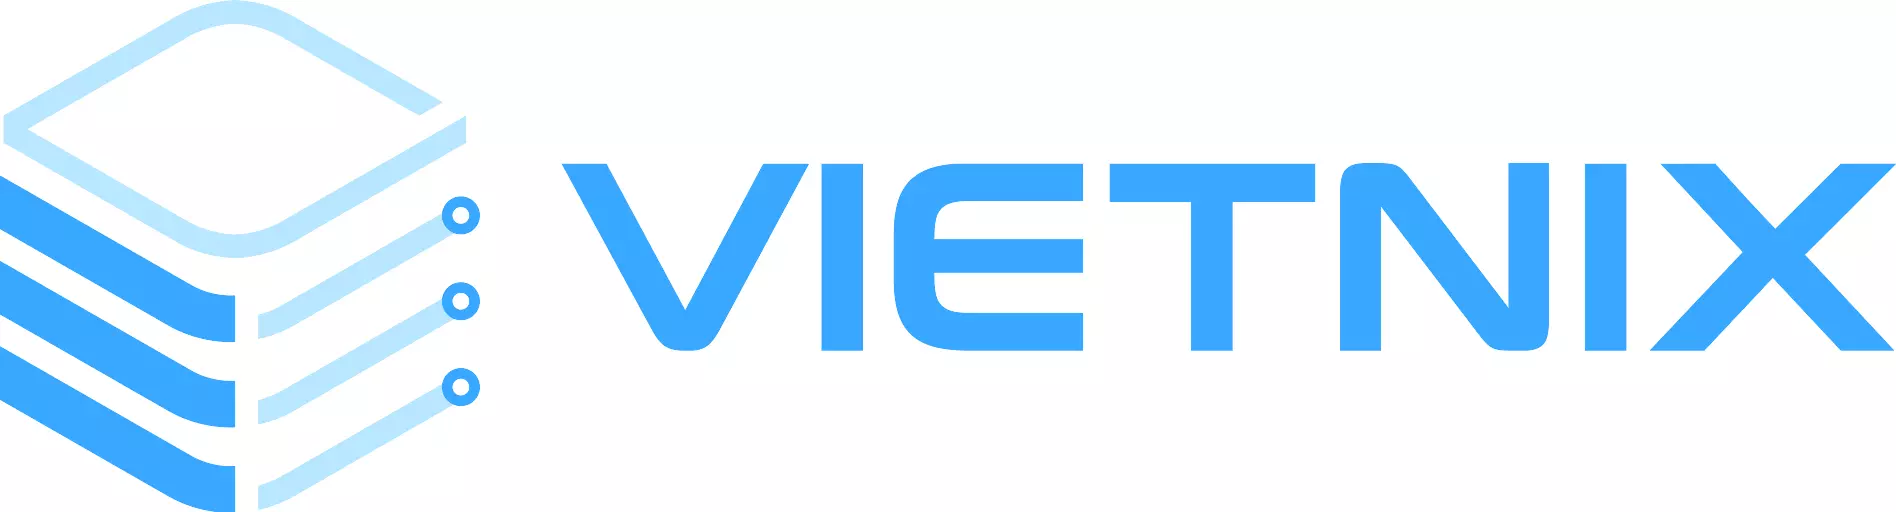 Vietnix - Nhà cung cấp hosting tốt nhất Việt Nam hiện nay